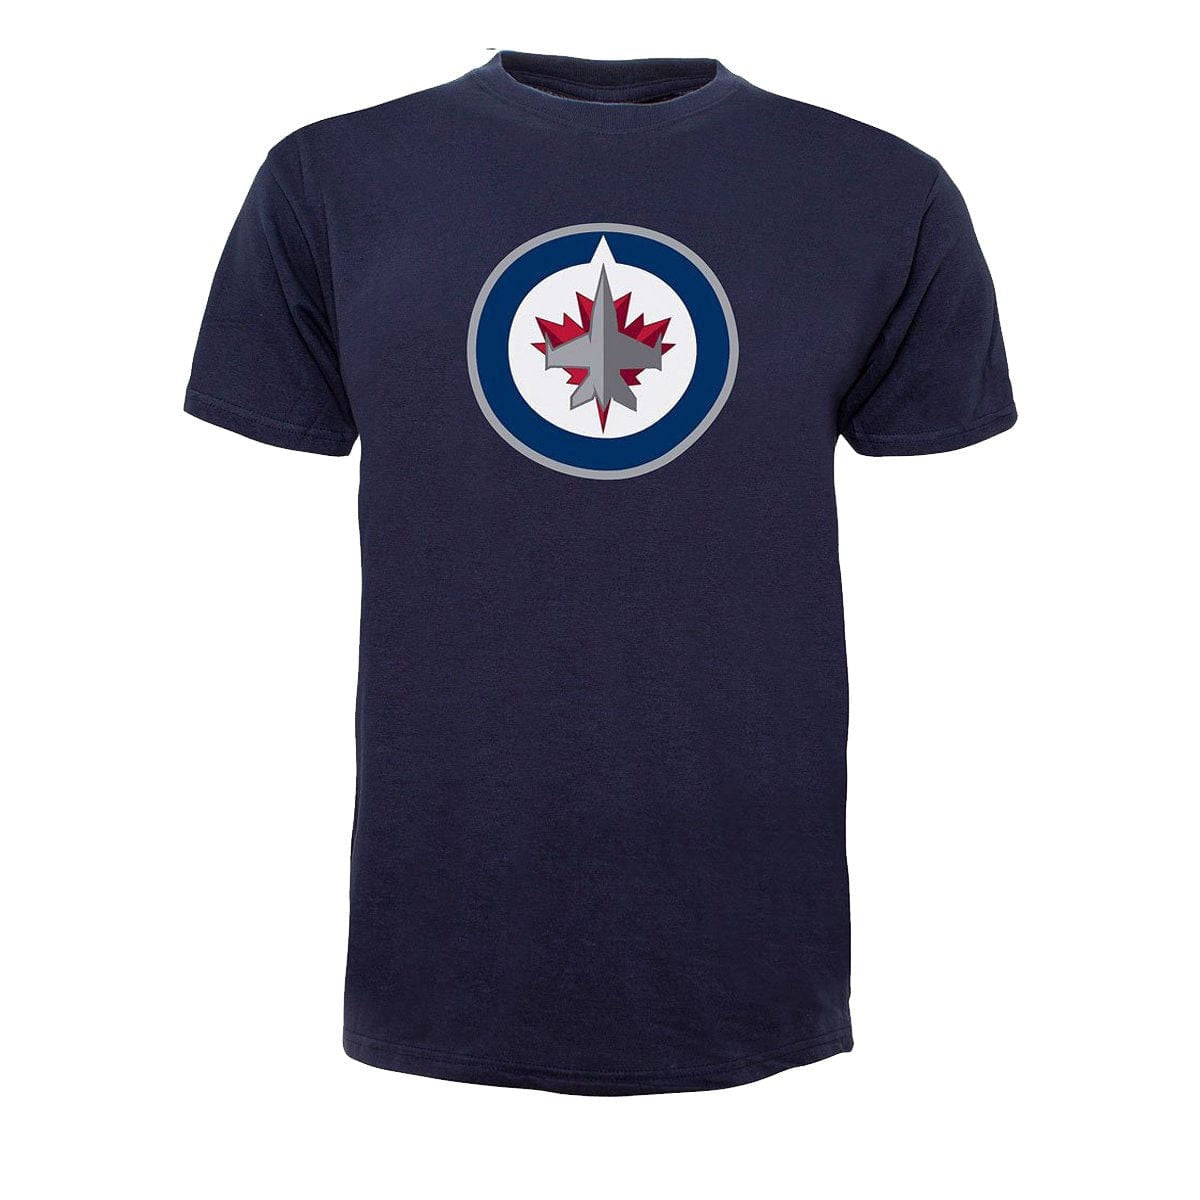 Winnipeg Jets 47 Brand Fan Tee Shirt